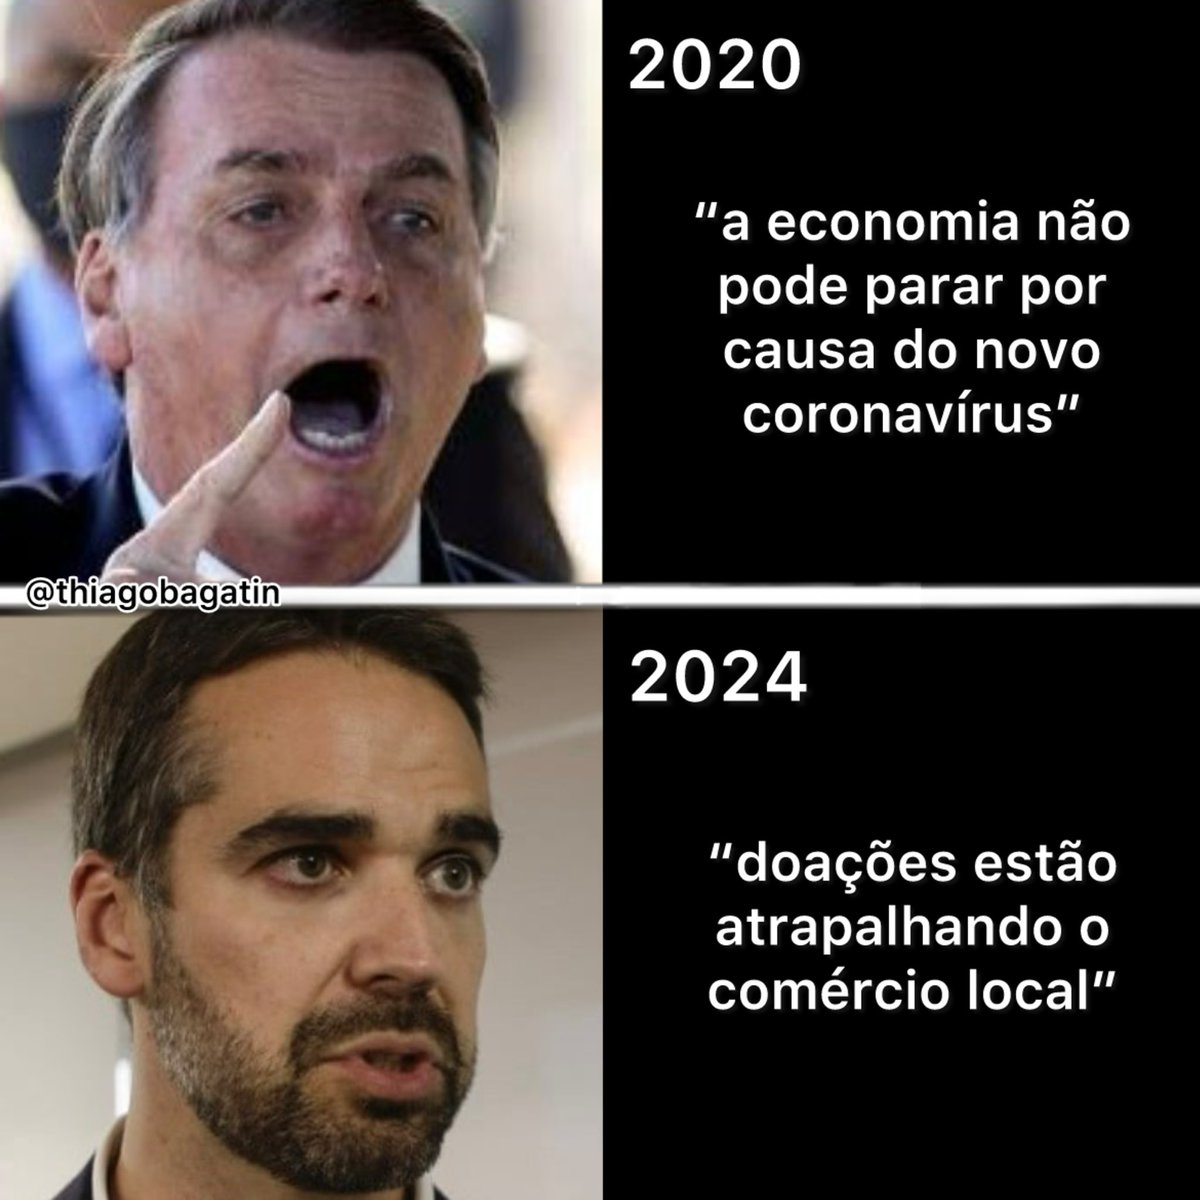 Eduardo Leite = Bolsonaro